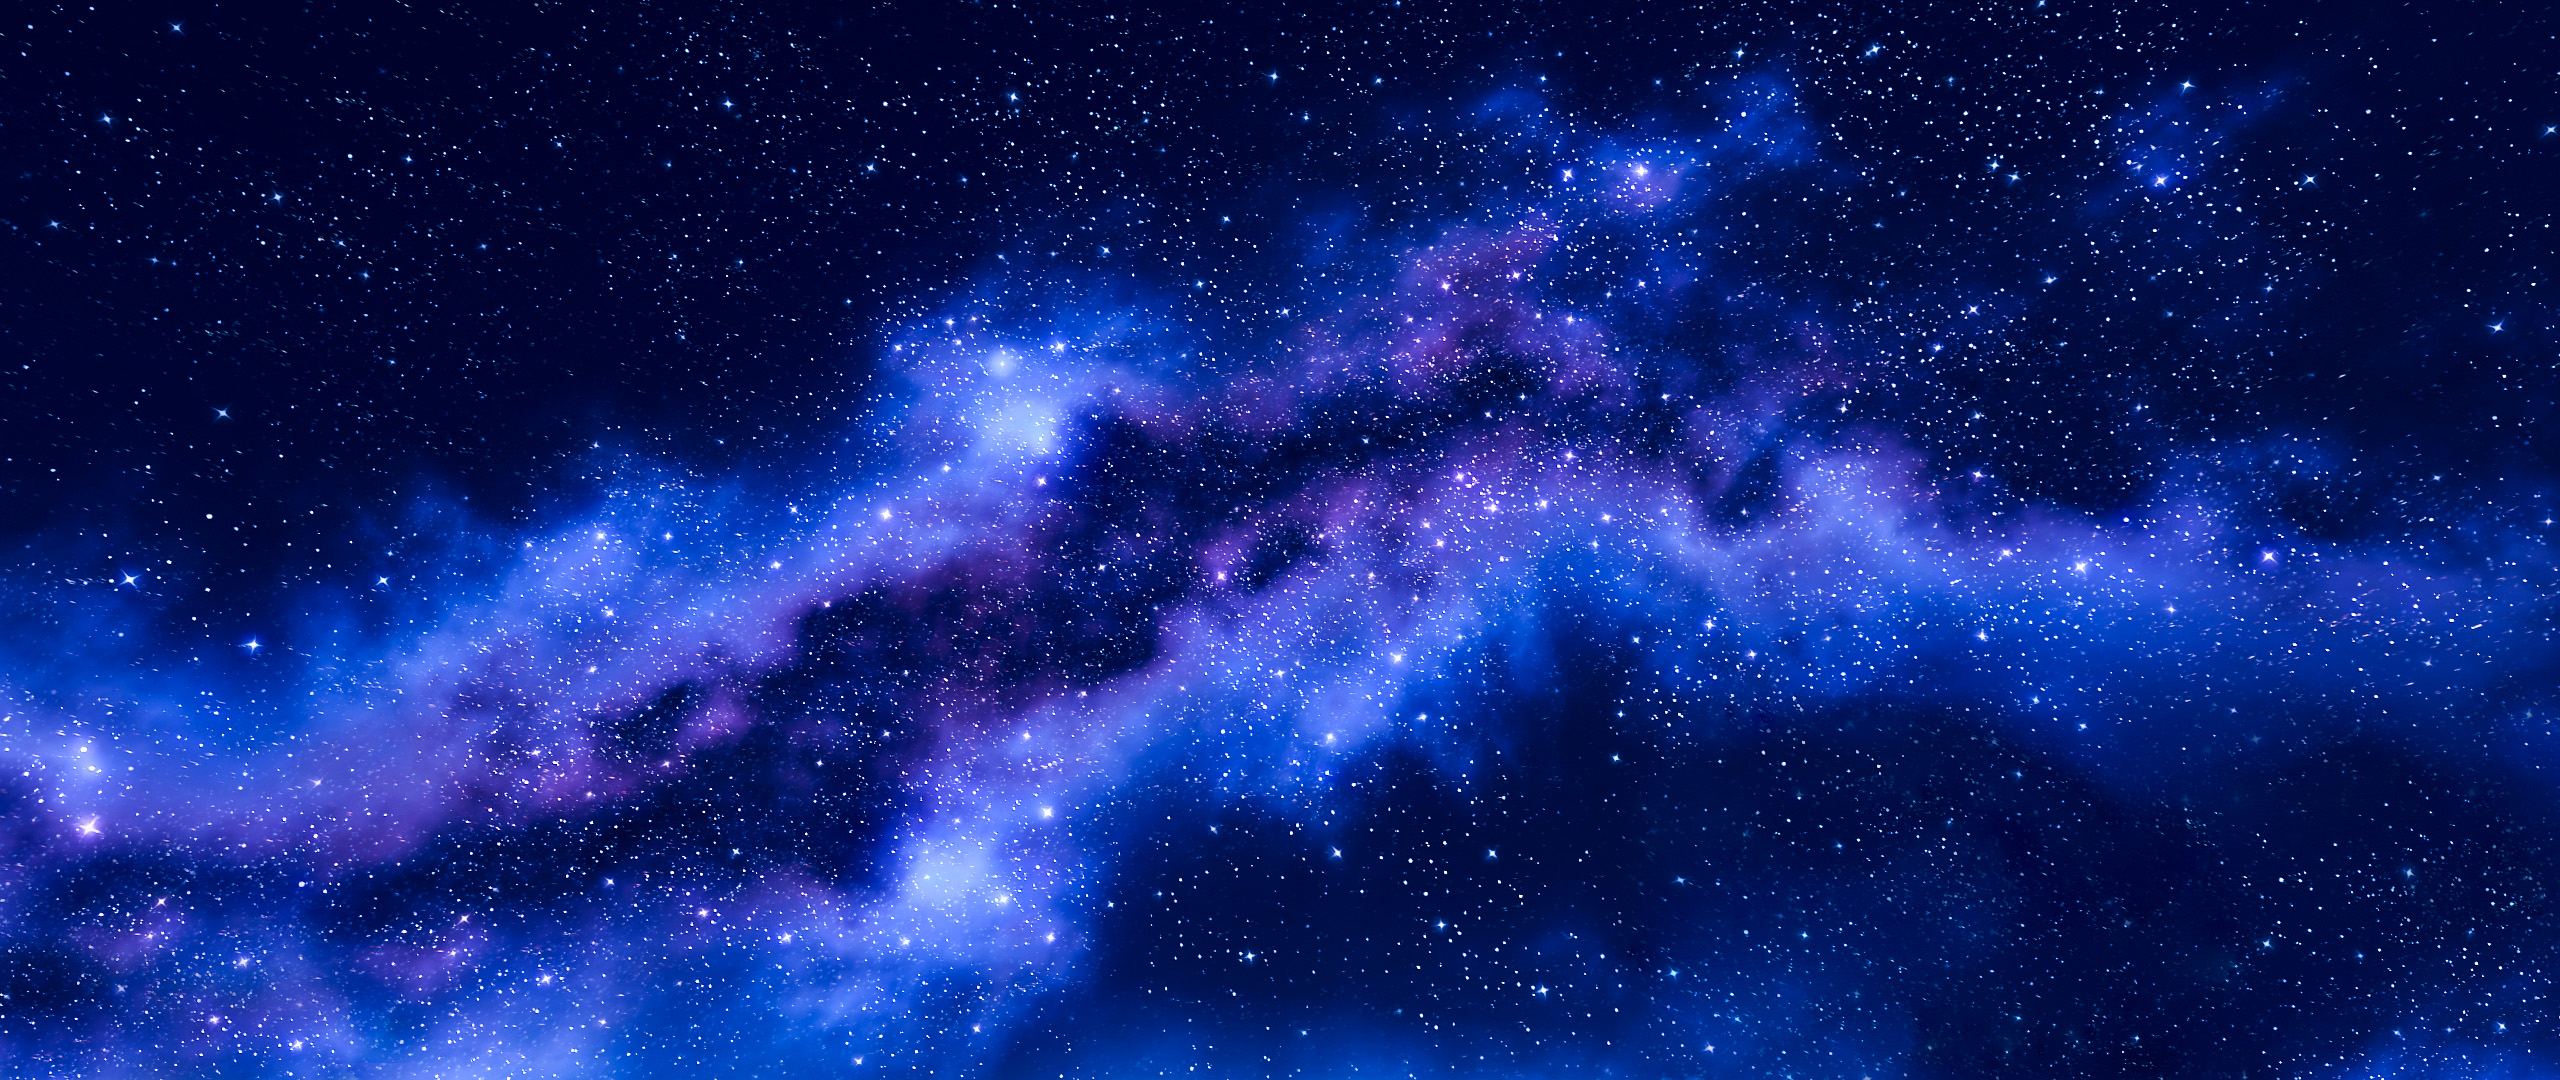 Blue star constellation